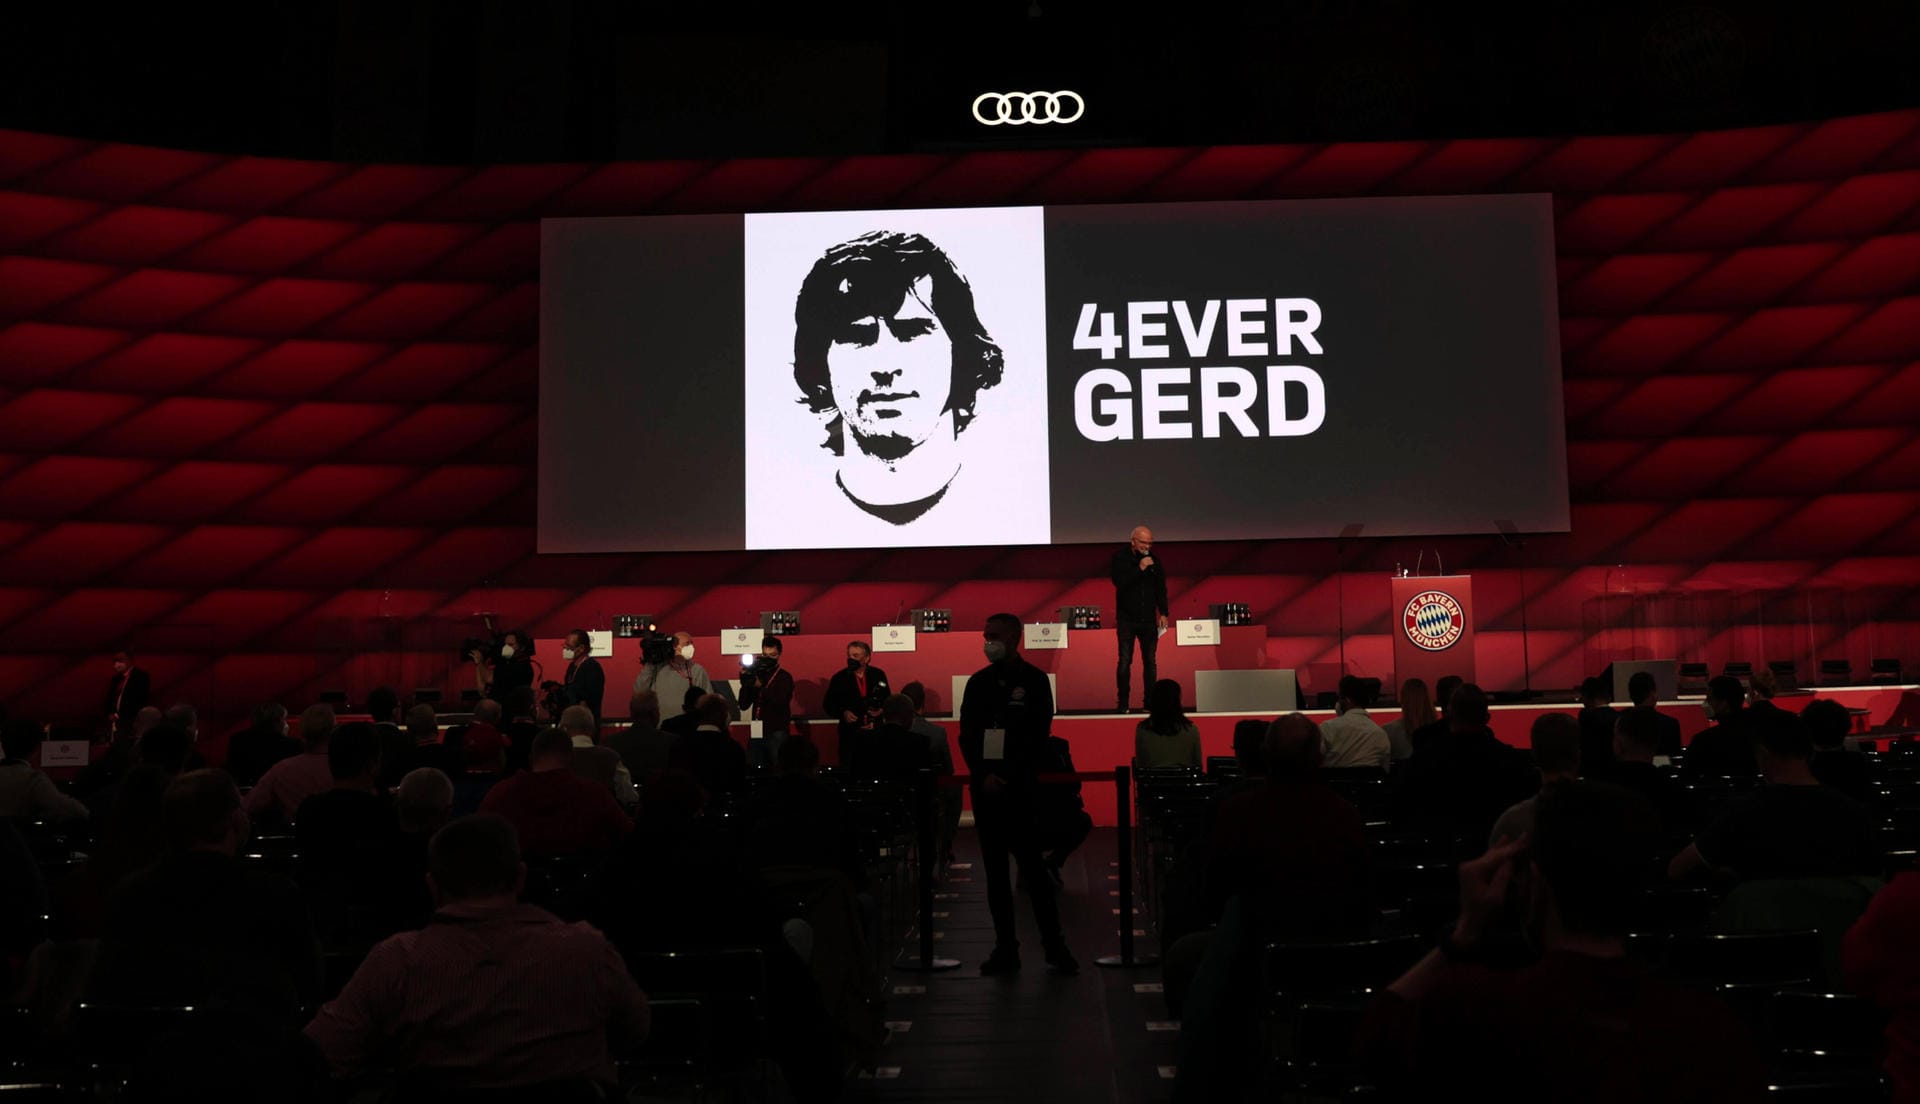 15. August: Gerd Müller, der "Bomber der Nation", ist tot. Der Siegtorschütze des WM-Finales 1974 verstirbt im Alter von 75 Jahren. In den vergangenen Jahren litt Müller unter Demenz.